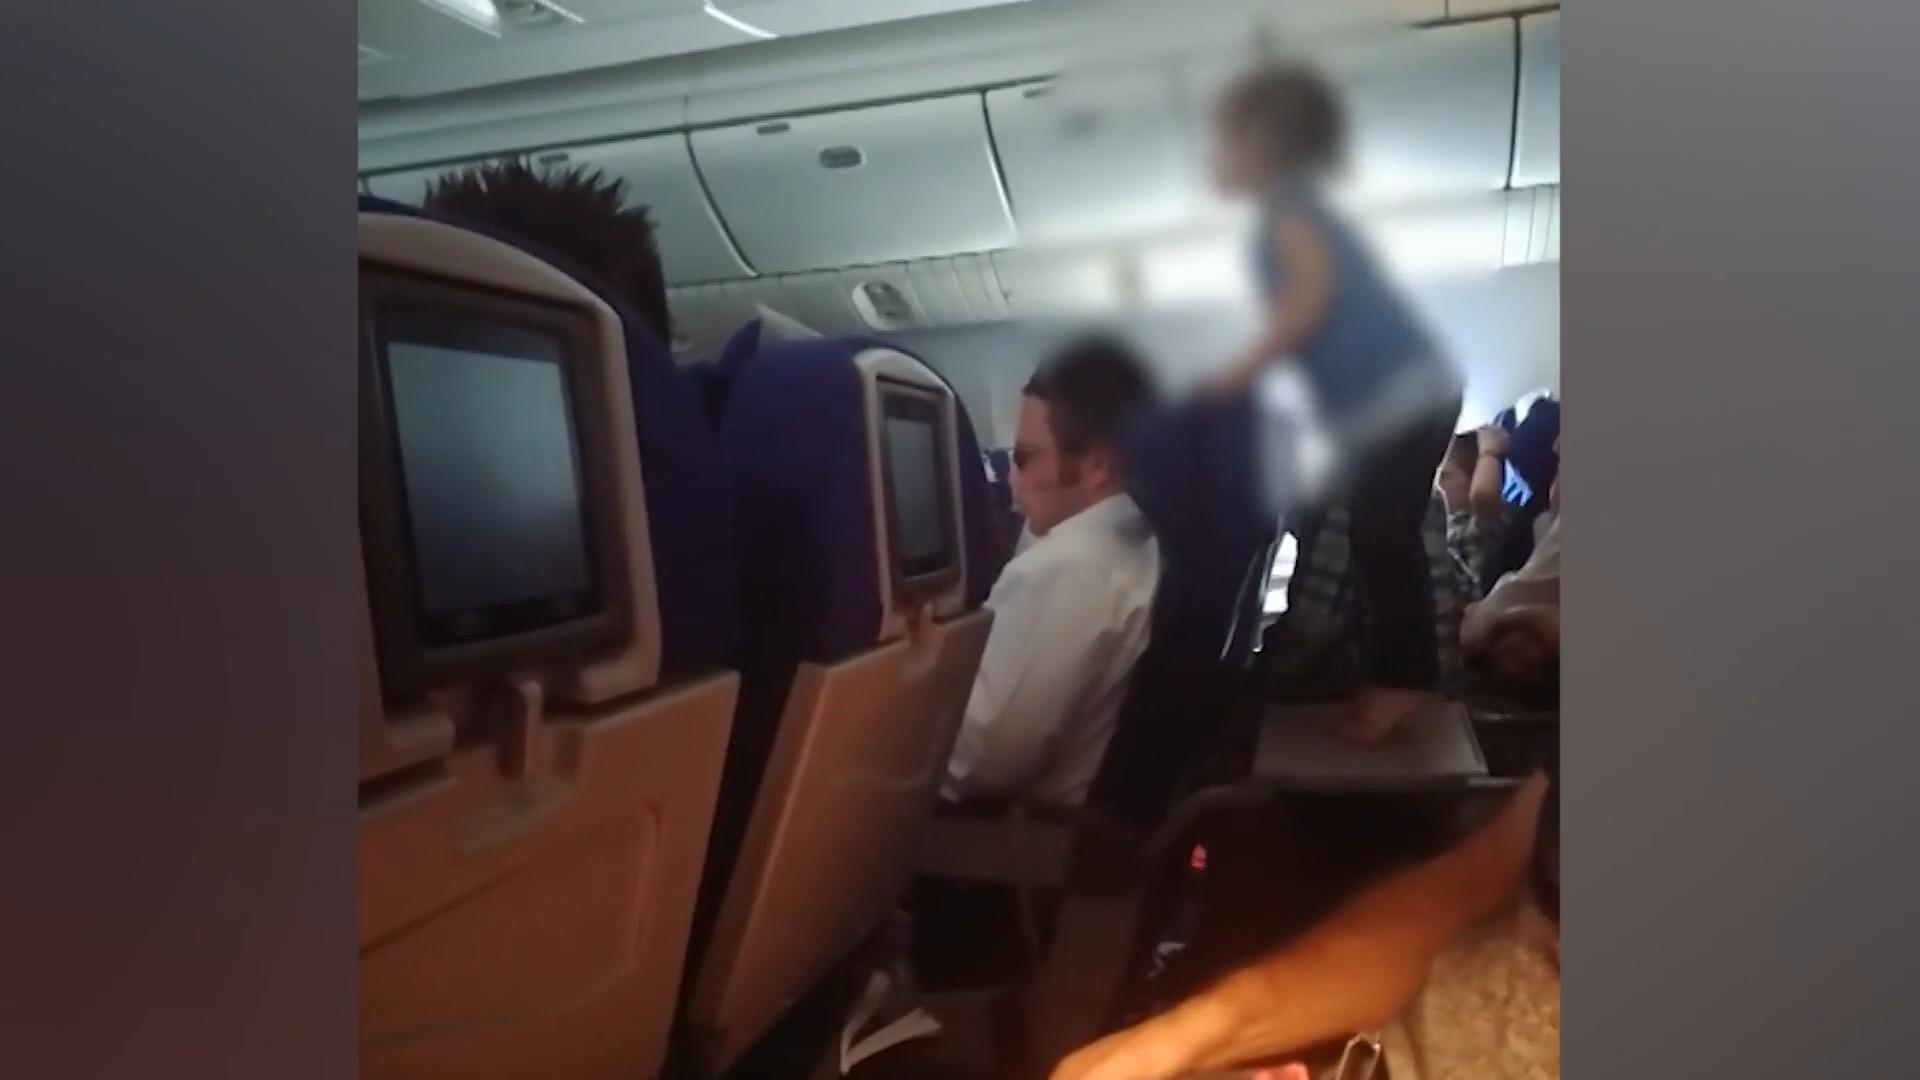 Kind randaliert im Flieger - Eltern kassieren Shitstorm Video regt das Netz auf